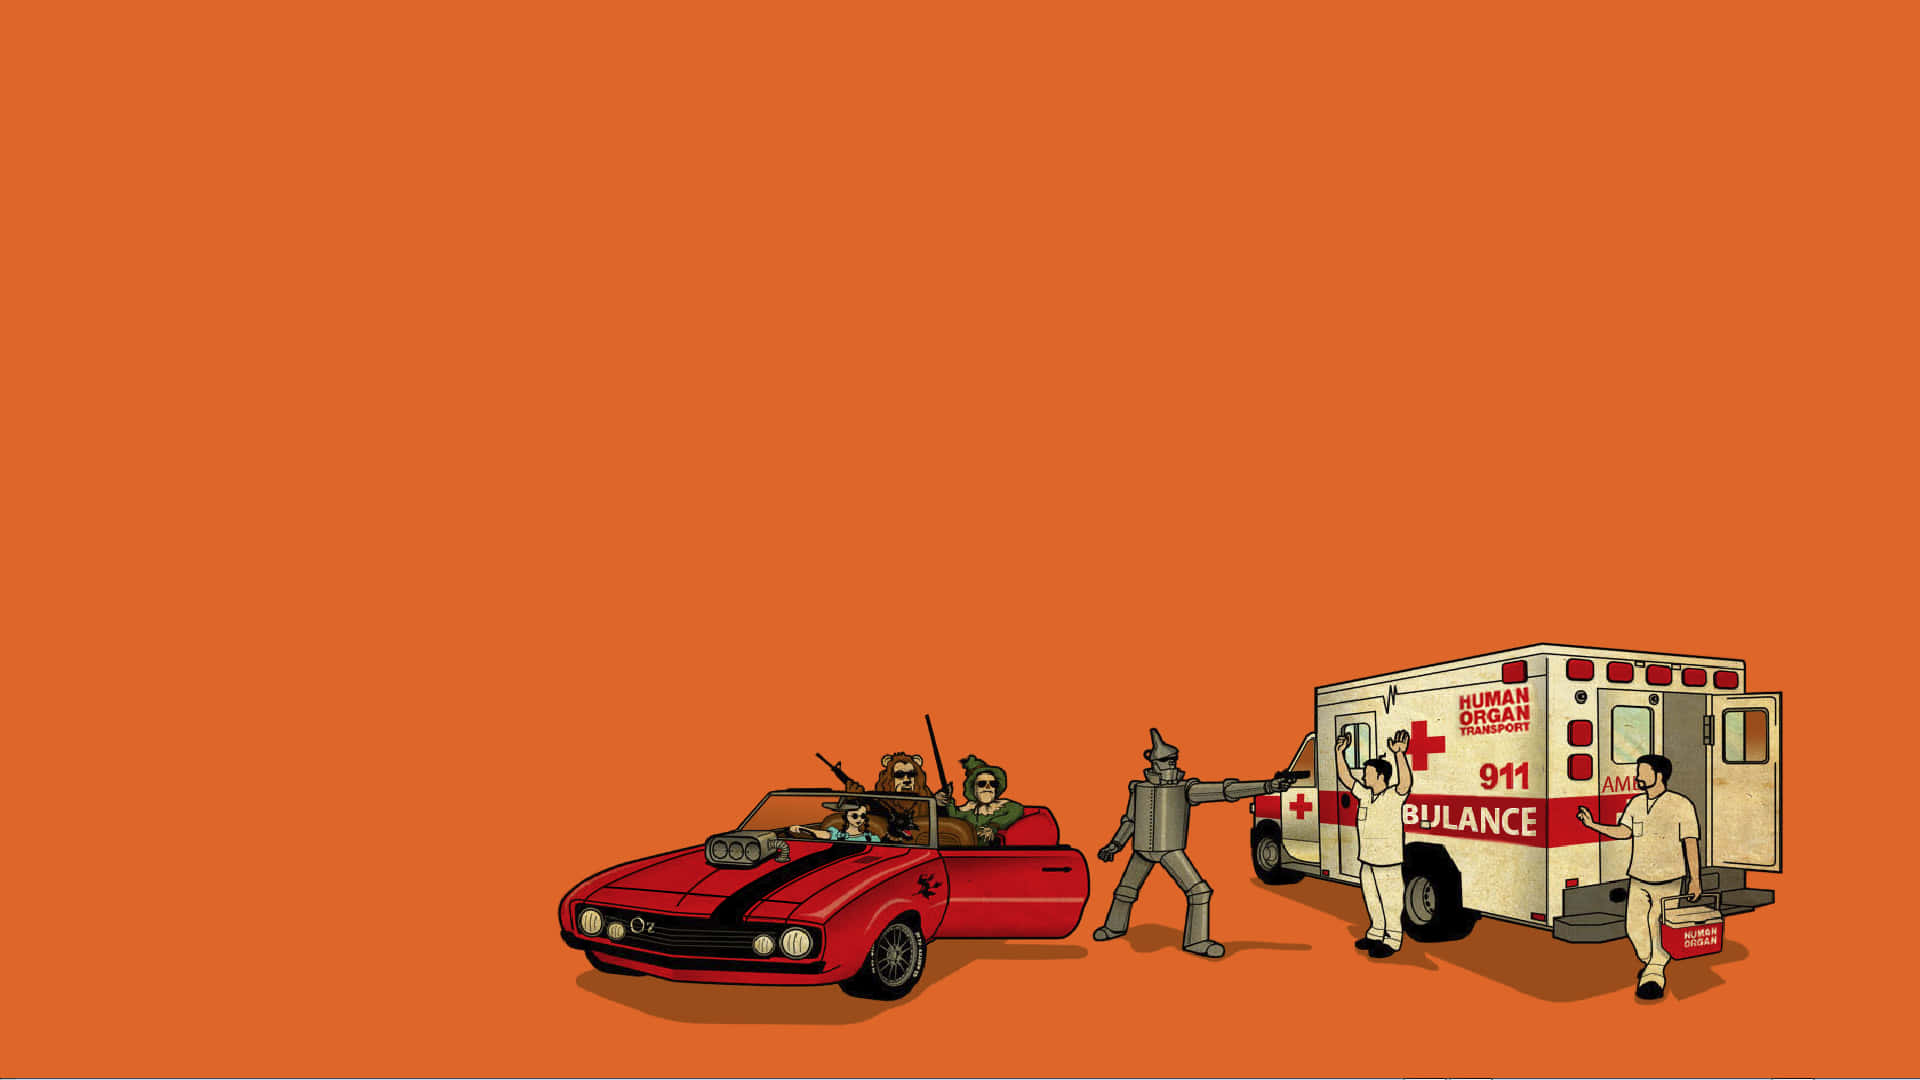 Et tegneserie af en mand og en bil der kører Wallpaper